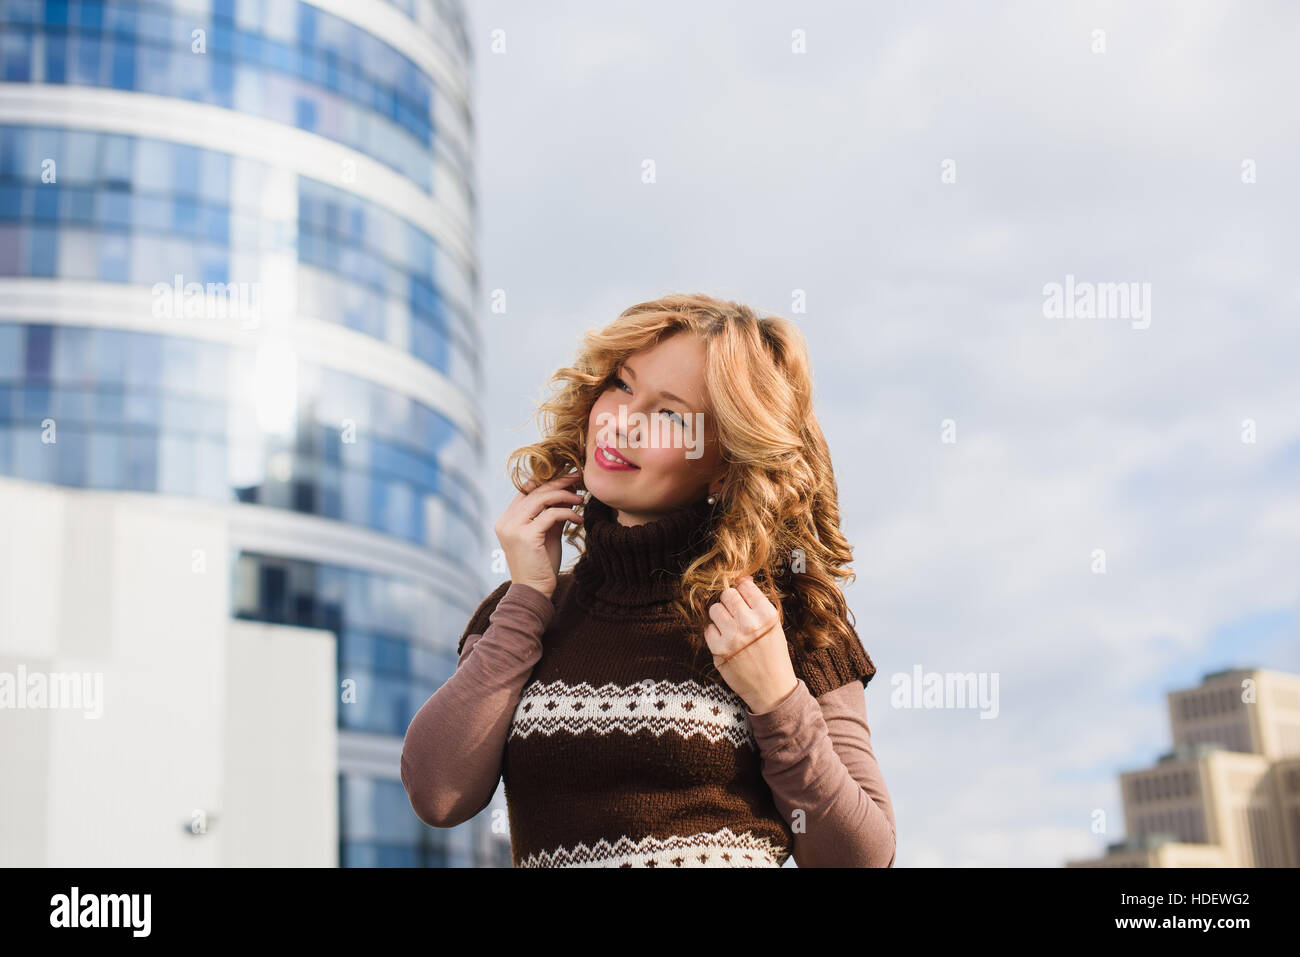 Mädchen posiert auf dem Dach des Einkaufszentrums. Stadt, modernes Gebäude im Hintergrund. Mädchen, gekleidet in braunen Pullover mit einer Christbaumkugel. Stockfoto